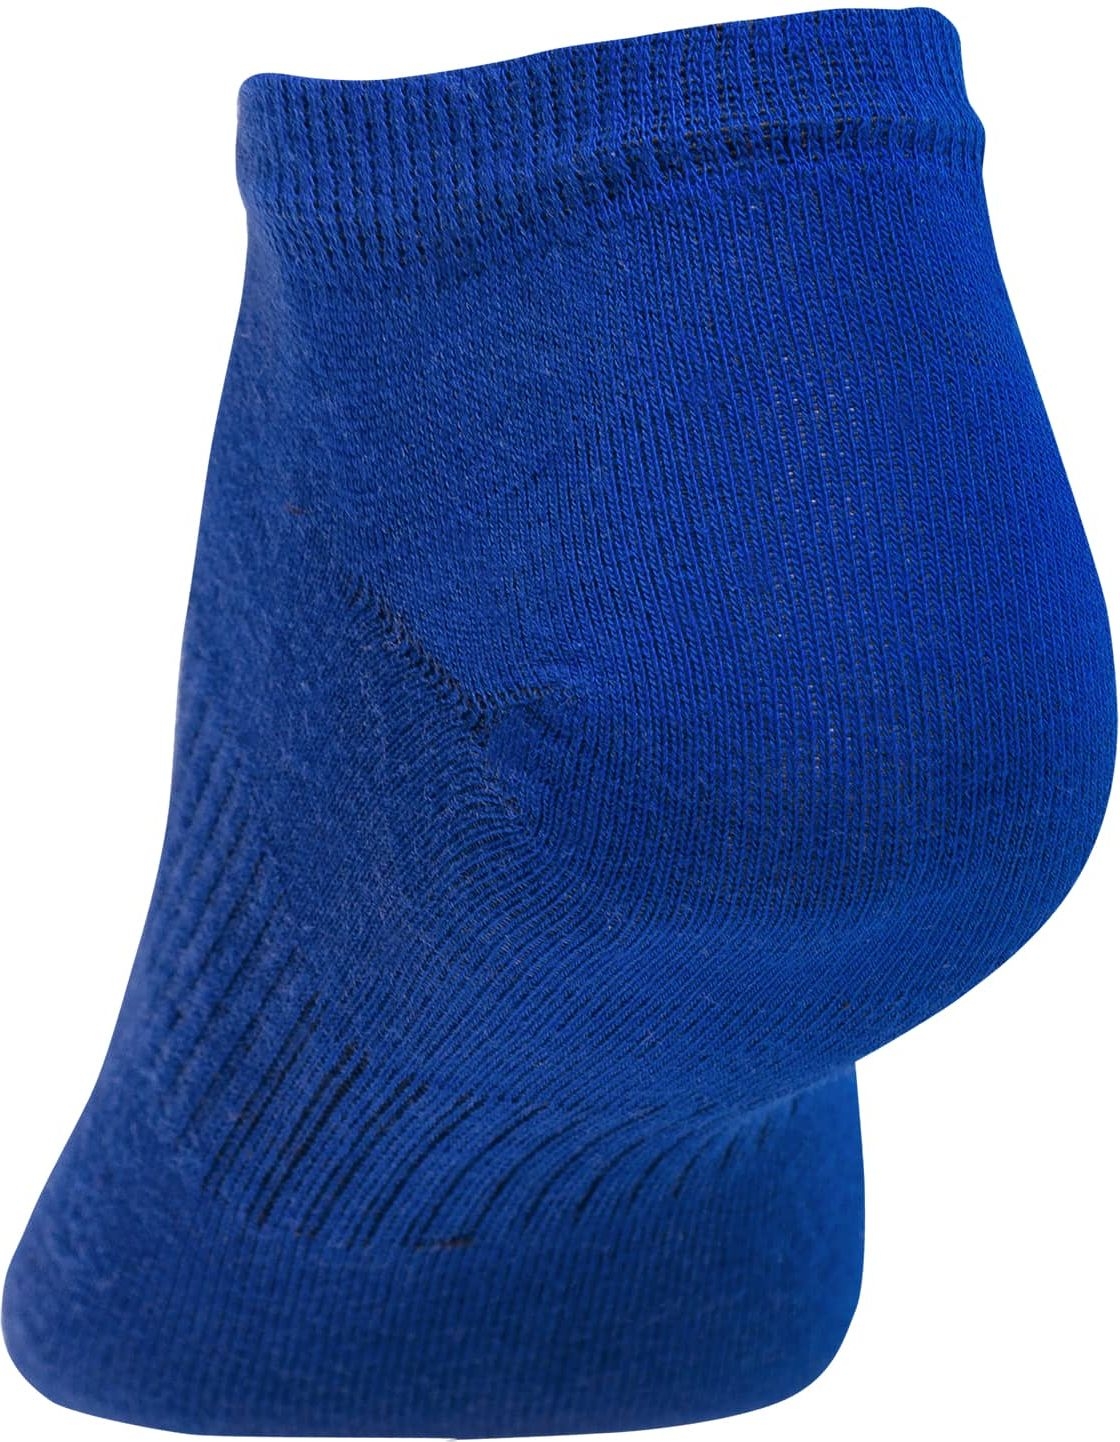 Носки женские STARFIT голубой/синий размер 25-27 2 пары (SW-205-BL-3942) - Фото 7